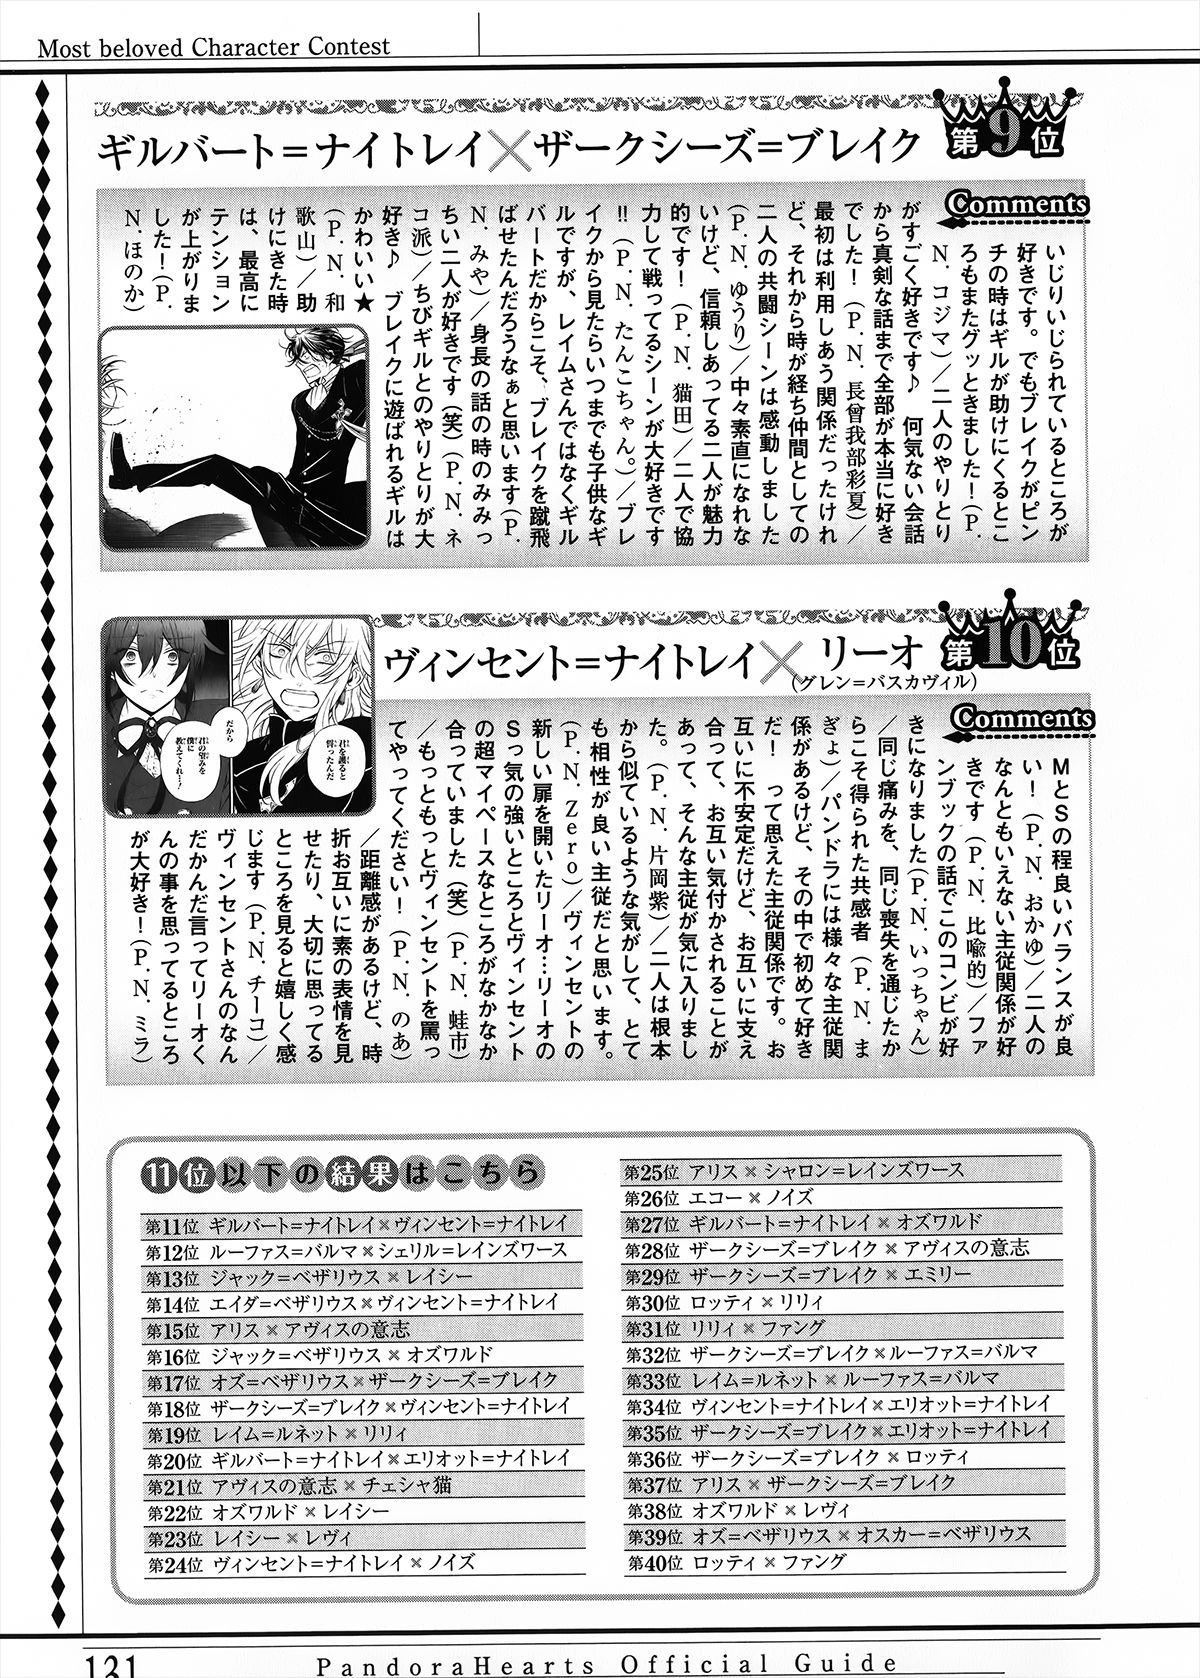 Pandora Hearts Guidebook 24+1: Last Dance パンドラハーツ オフィシャルガイド 24 + 1 ~Last Dance! 135